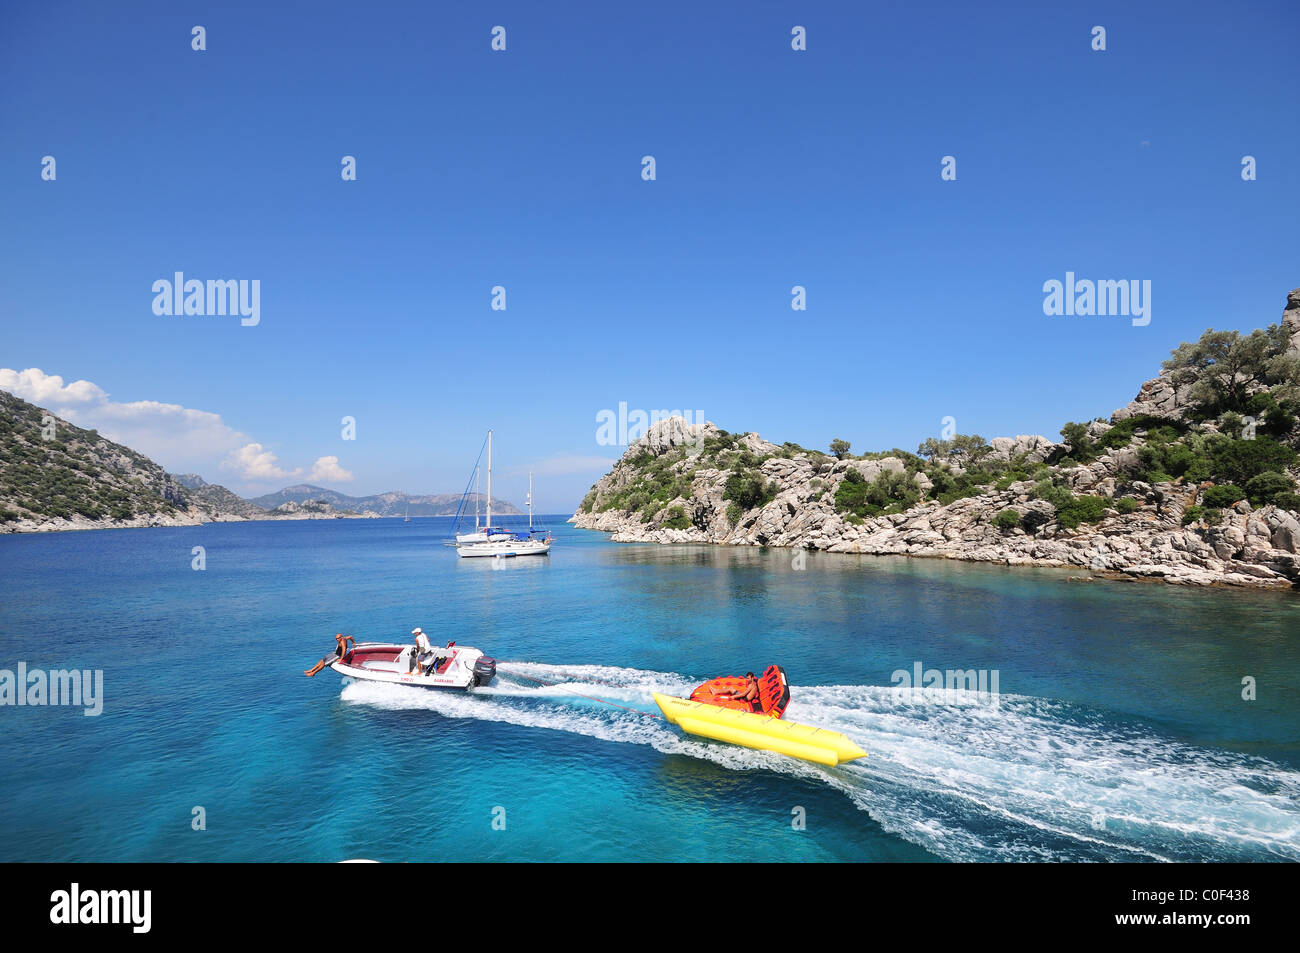 Une vue imprenable sur une magnifique baie avec une eau cristalline turquoise dans le sud de la Turquie, sur la mer Egée, la Turquie, l'Europe du Sud Banque D'Images